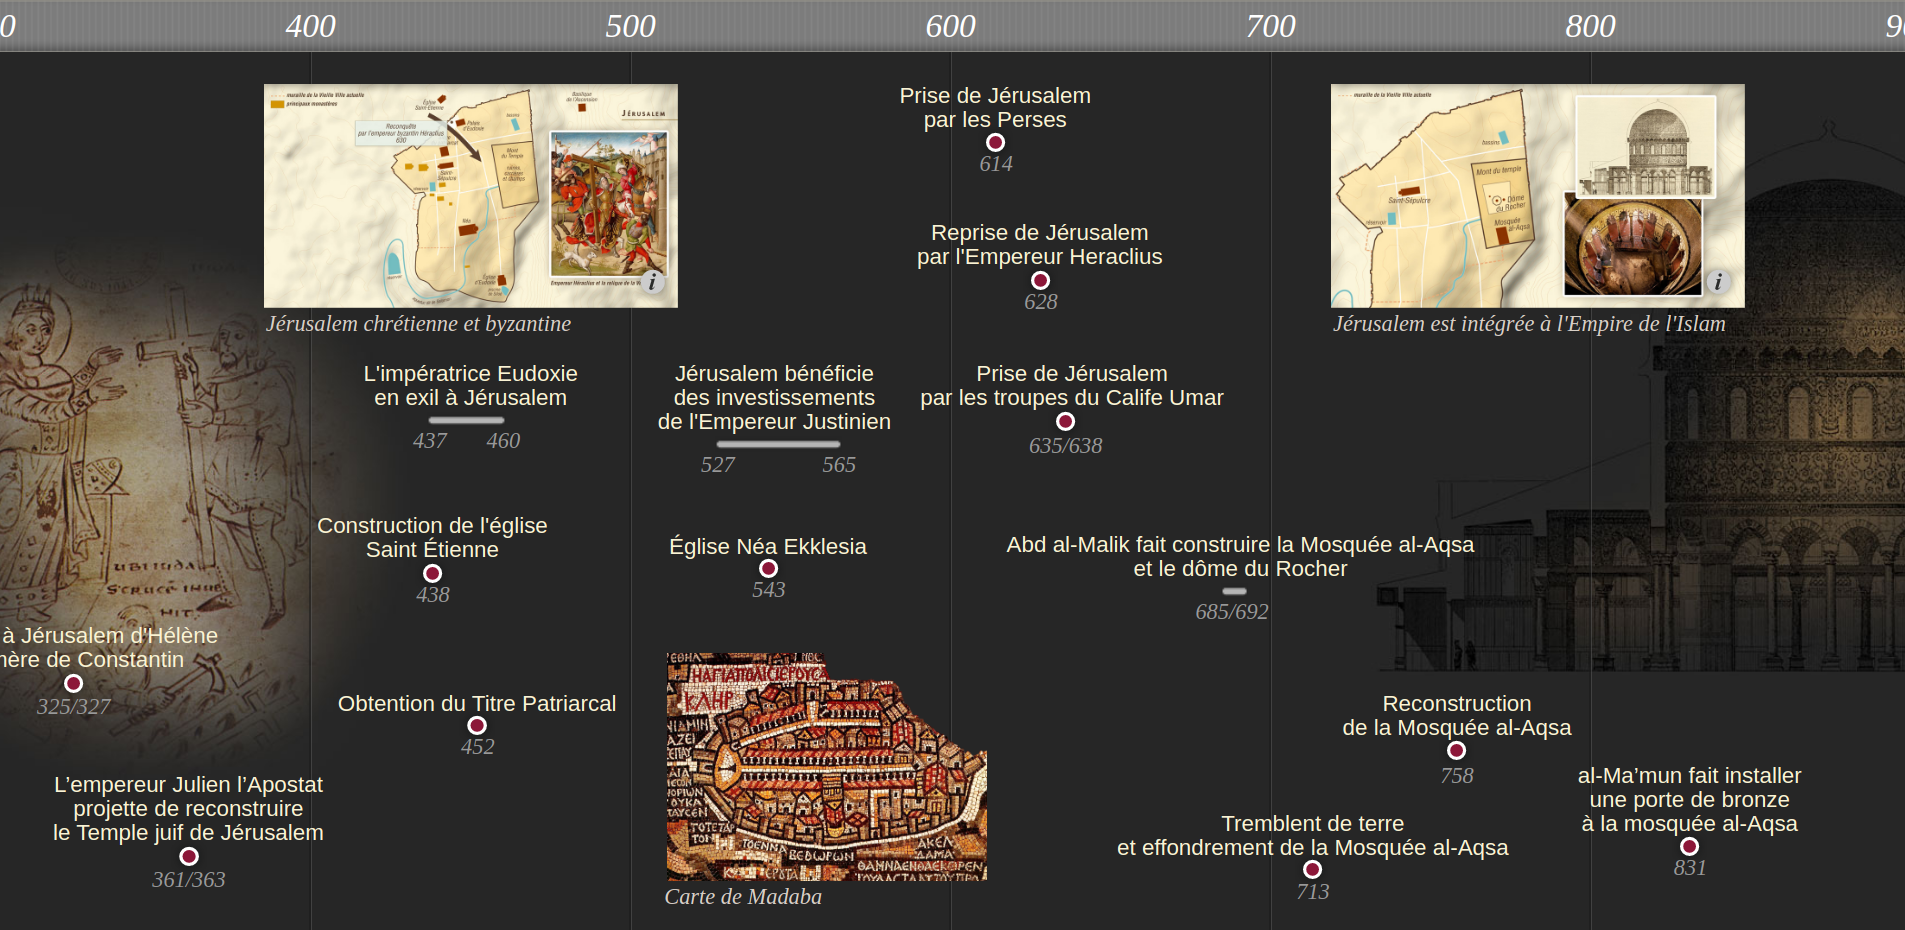 Frise chronologique de l’histoire de Jérusalem